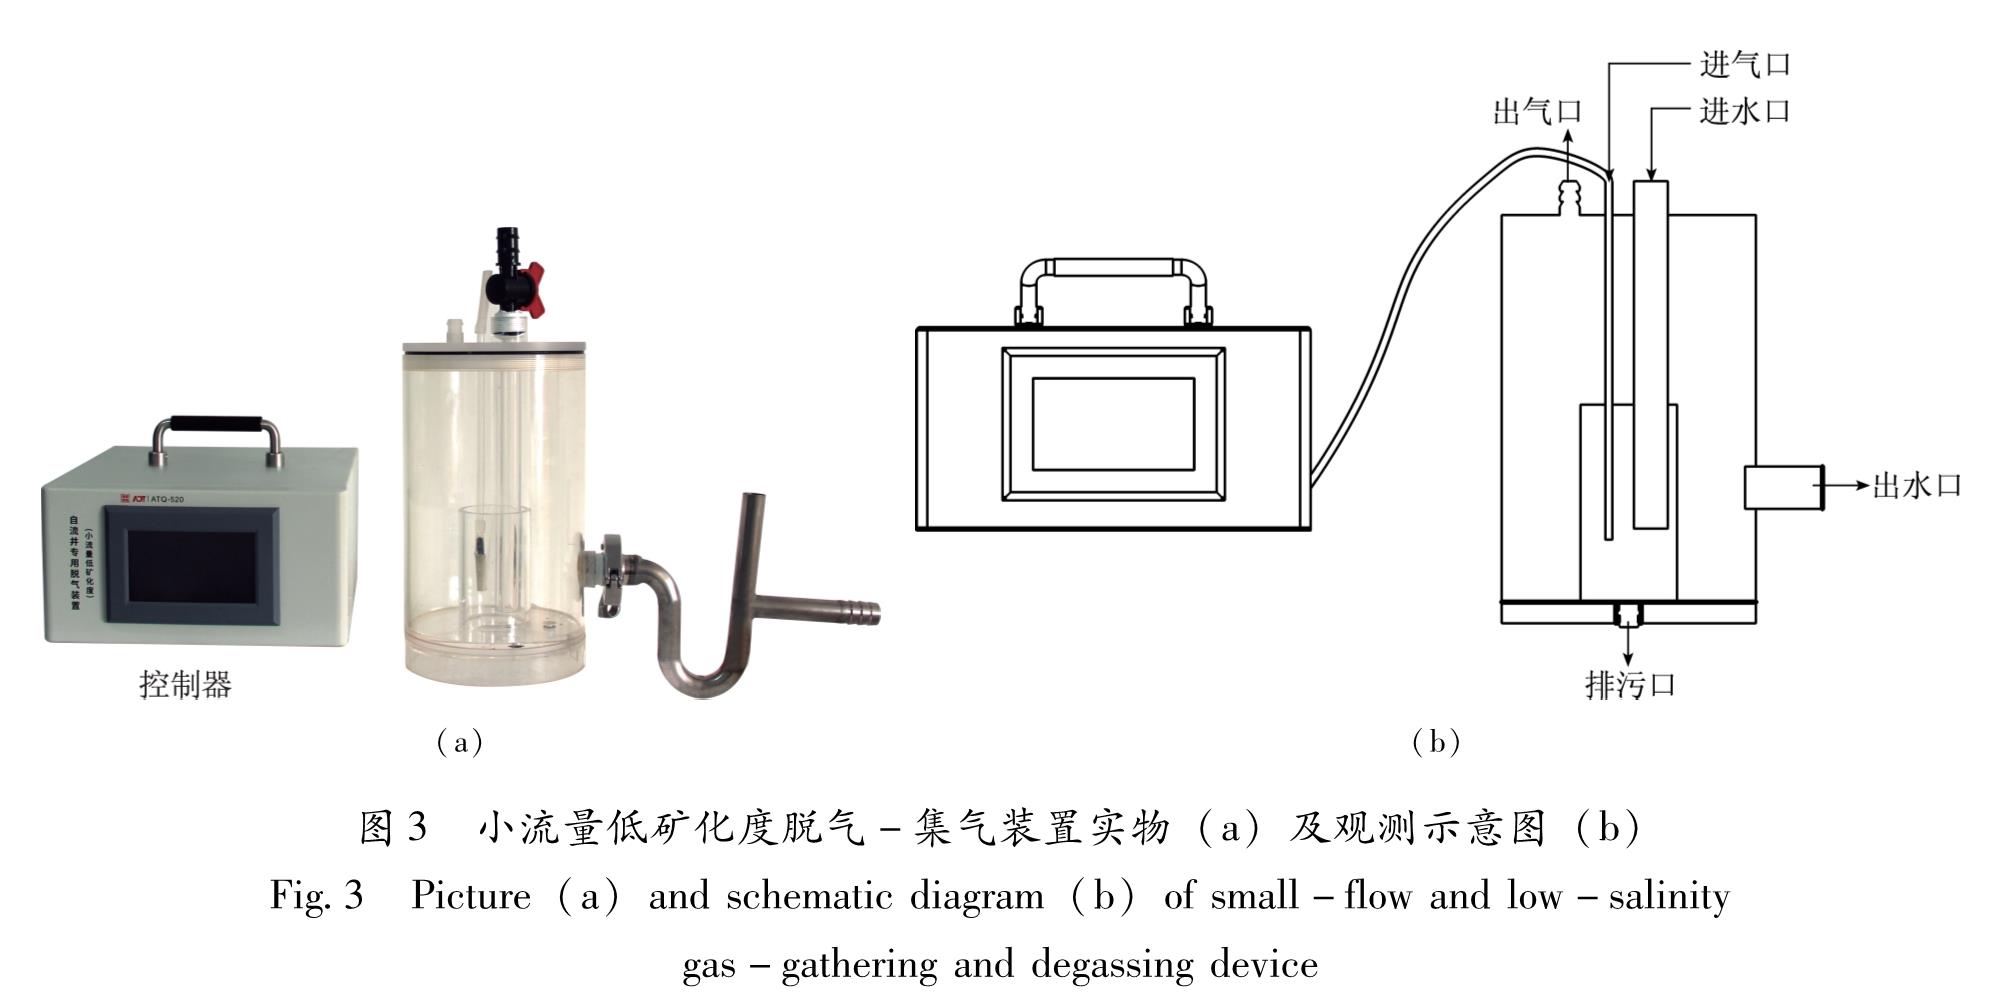 图3 小流量低矿化度脱气-集气装置实物(a)及观测示意图(b)<br/>Fig.3 Picture(a)and schematic diagram(b)of small-flow and low-salinity gas-gathering and degassing device